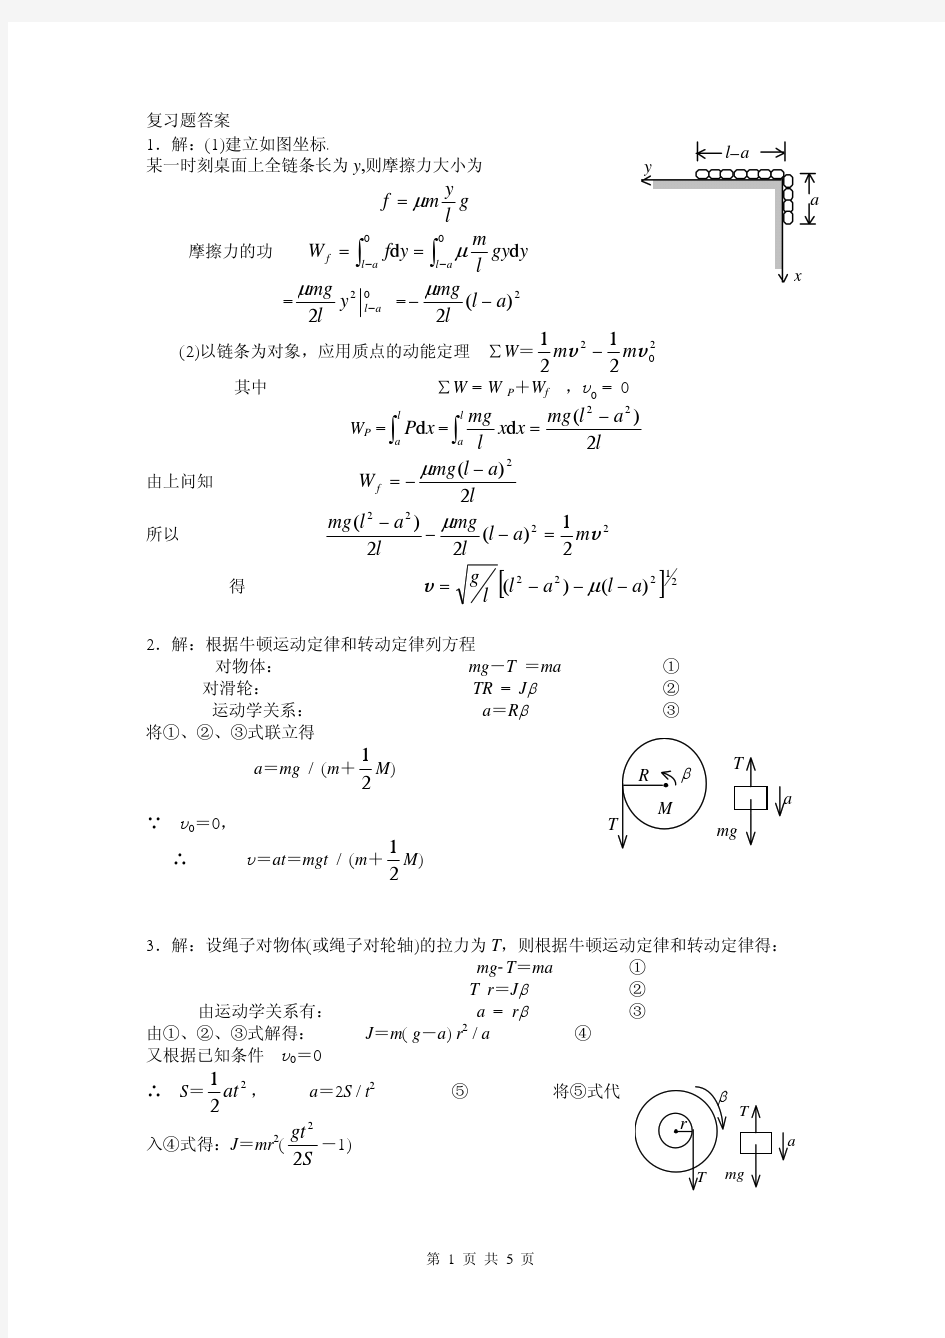 中国矿业大学(徐州)大一下学期,理学院,普通物理学(1),复习题答案